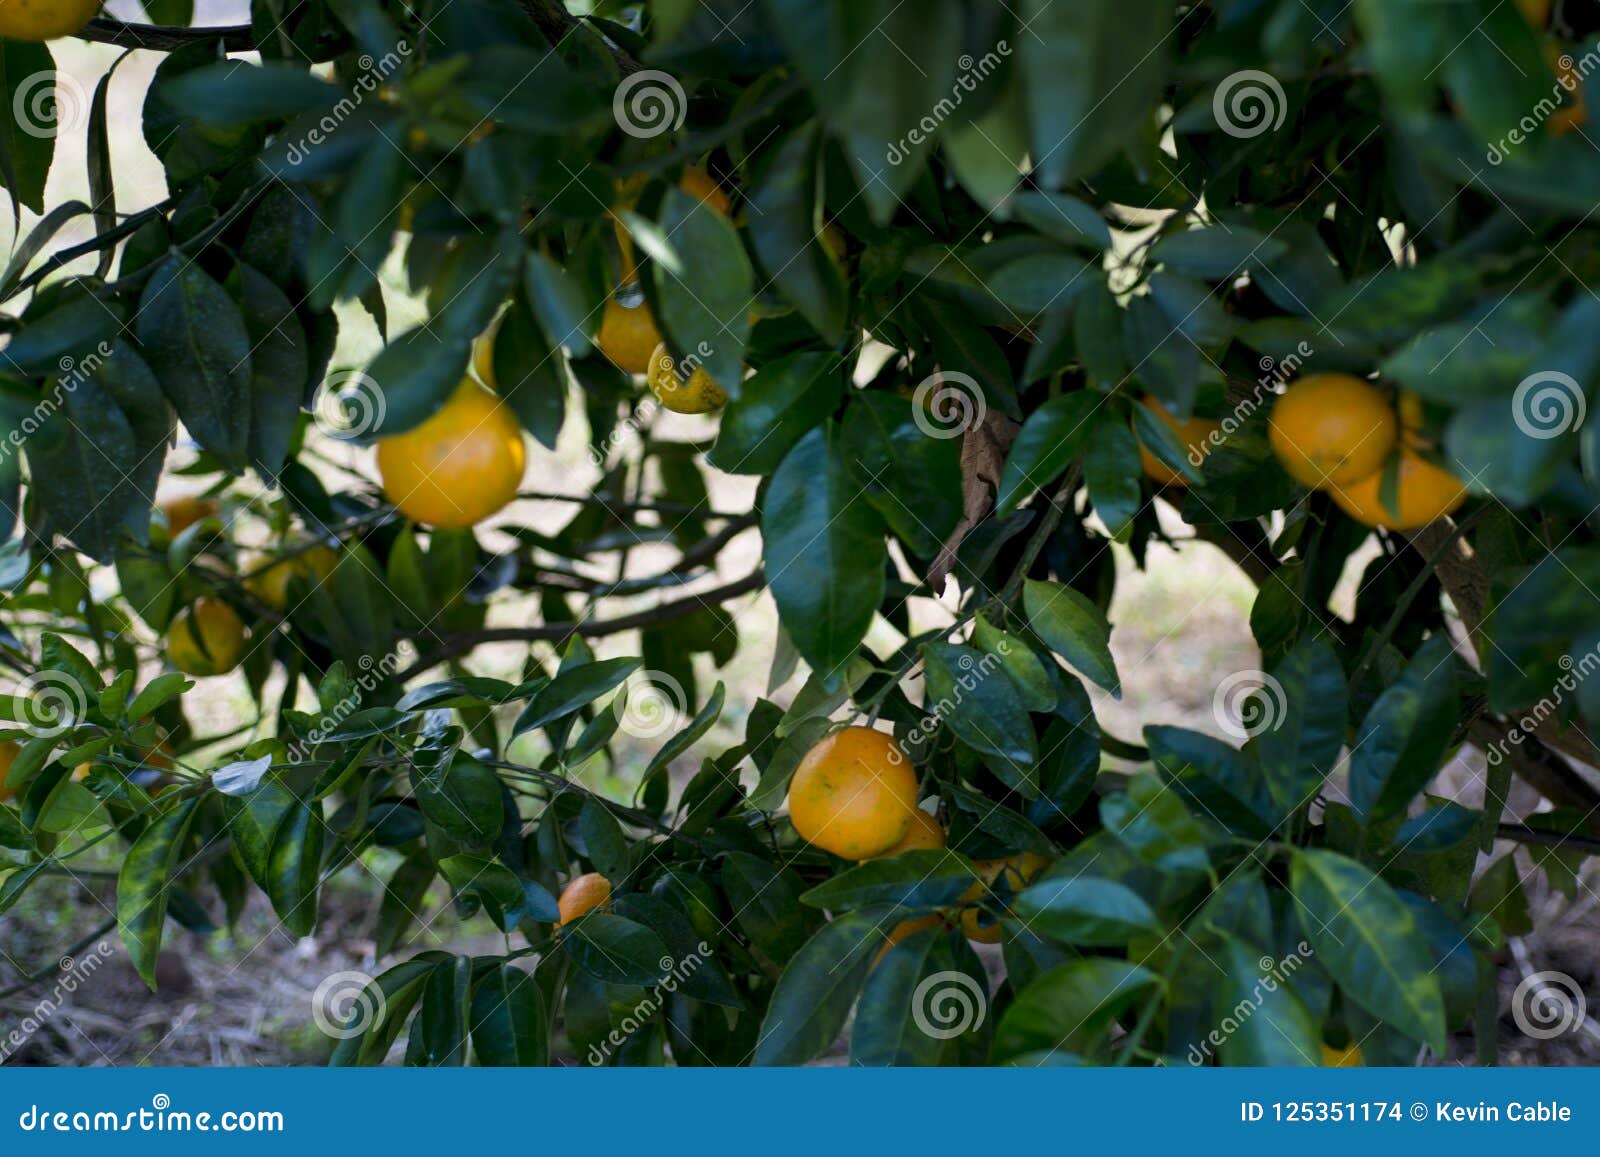 Orange Citrus Hanging On Branchs Stock Photo Image Of Grown